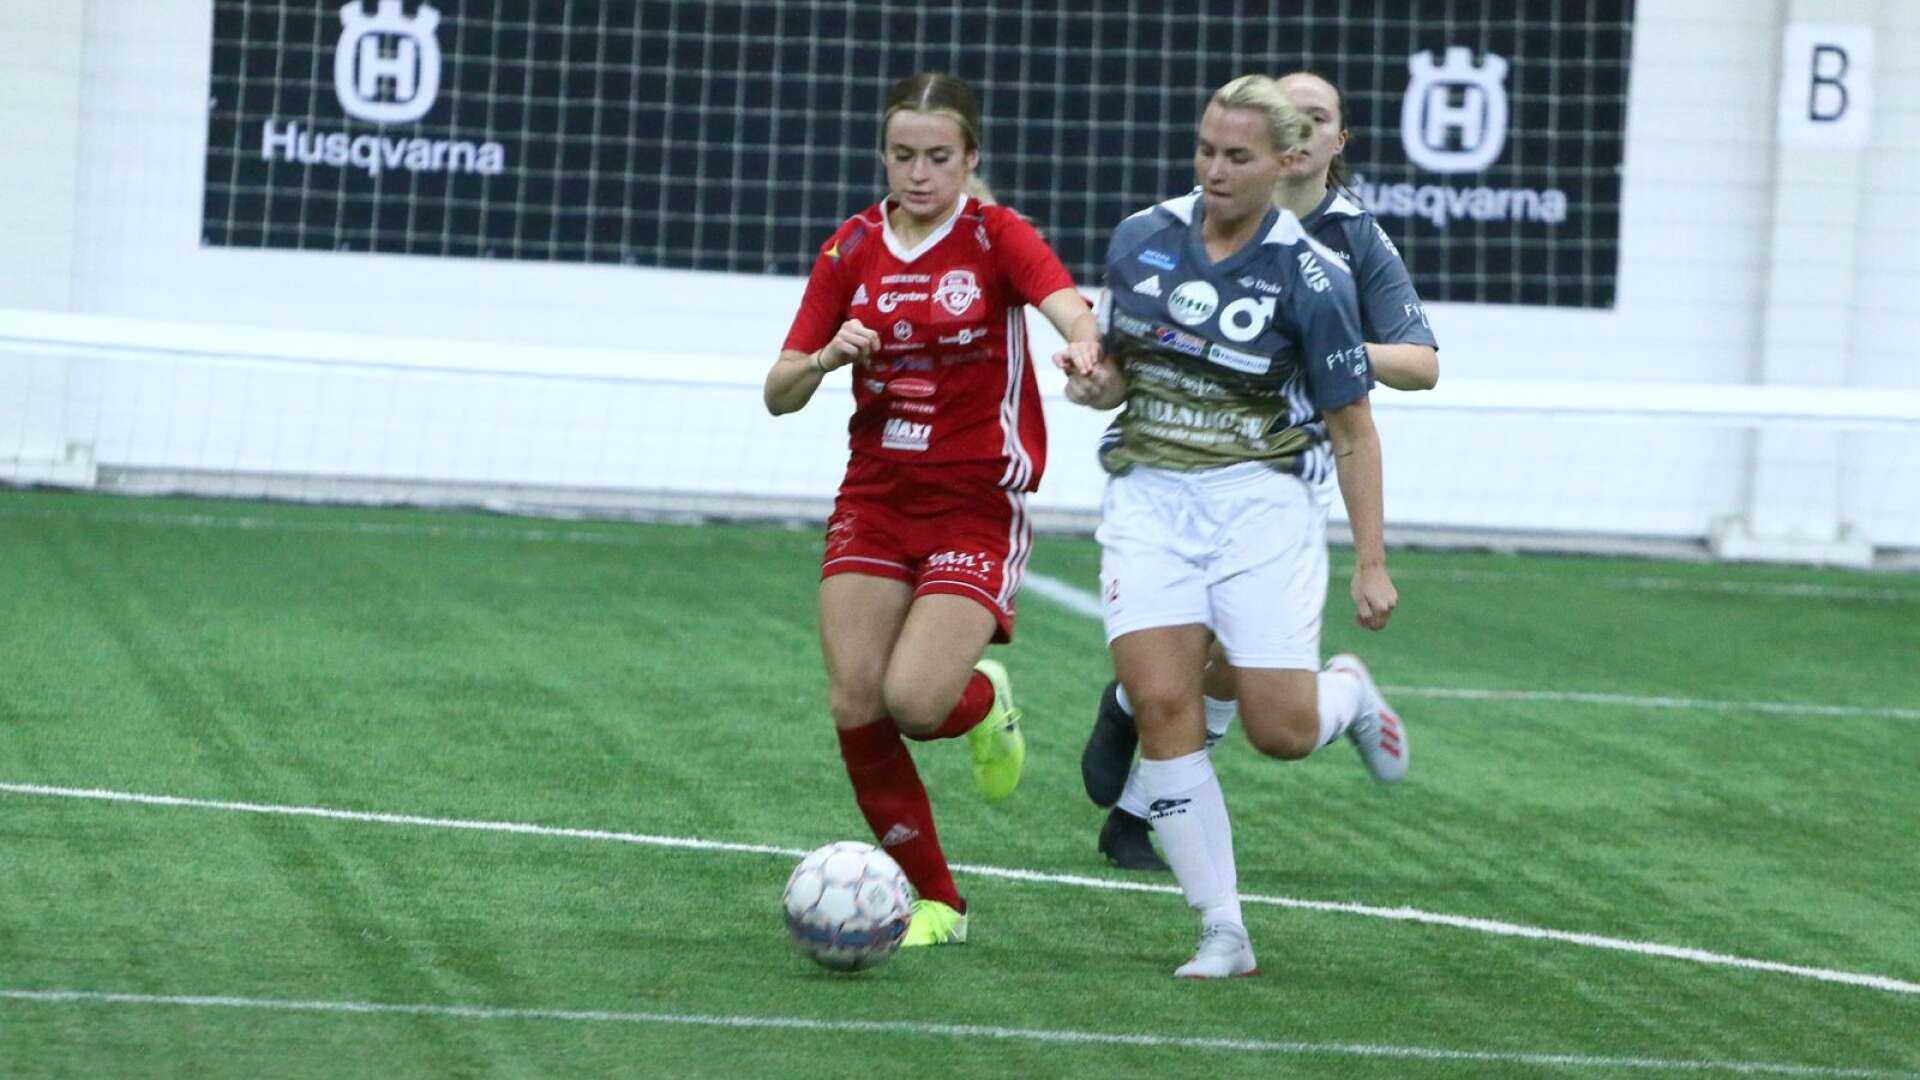 RIK:s Isabelle Olsson, till vänster, i duell med Jessica Höglund i DIF i lördagsförmiddagens match i Kristinehamn.